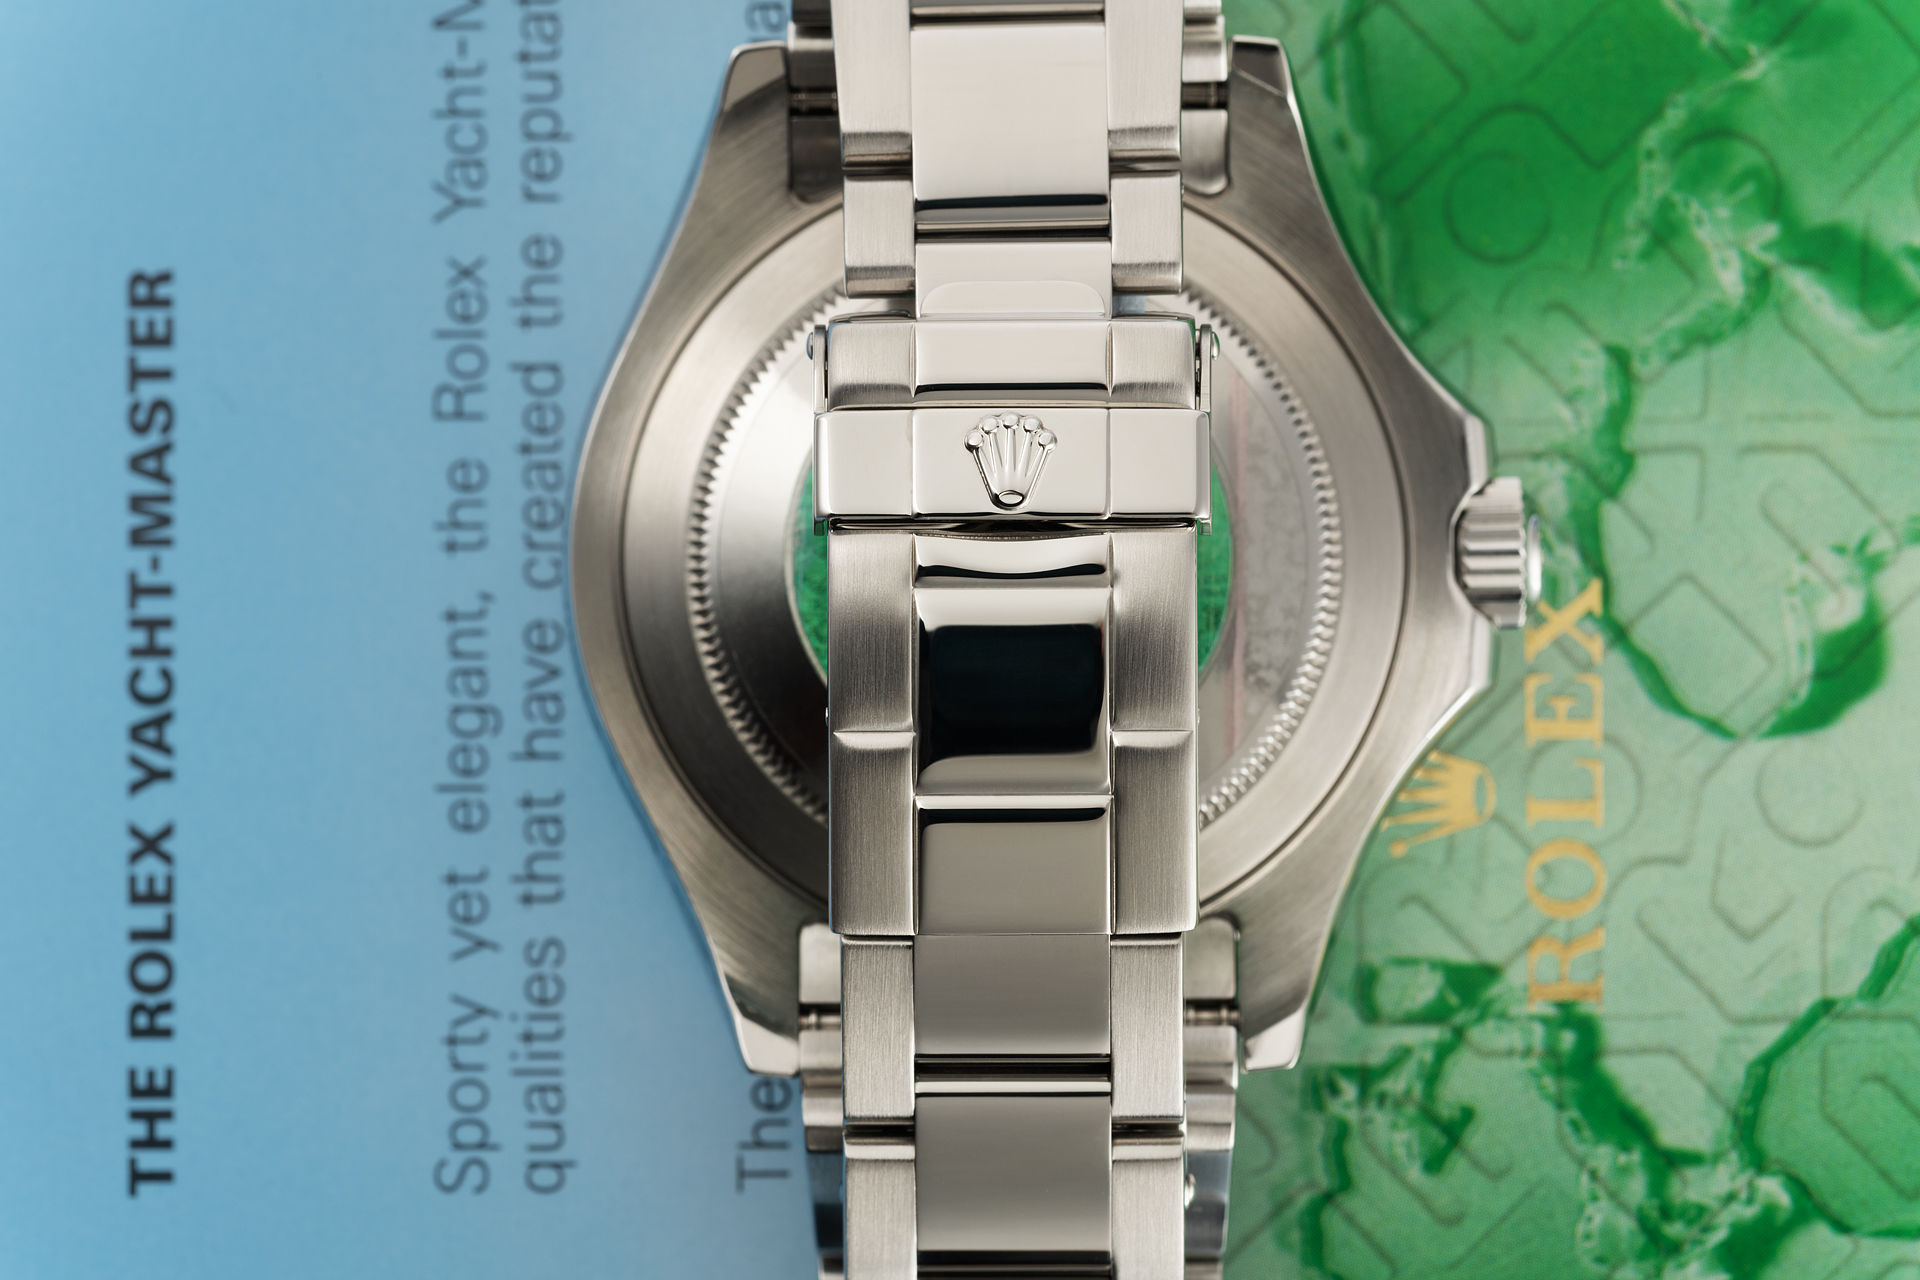 ref 16622 | 'Platinum Bezel' Rolex Warranty | Rolex Yacht-Master